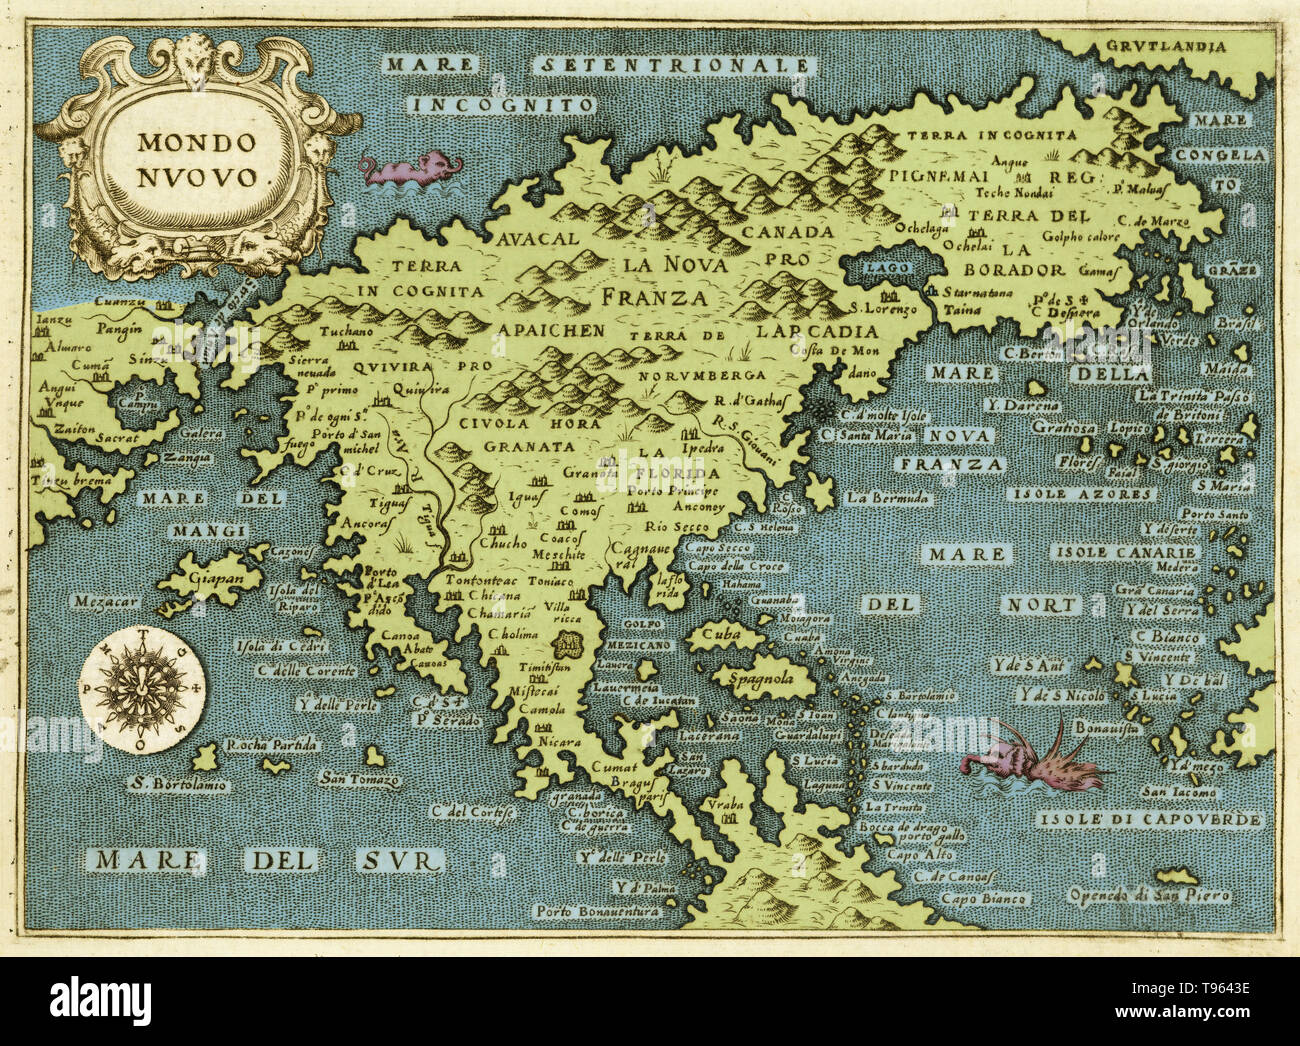 Mappa del Mondo Nuovo, 1572. Da Thomaso Porcacchi. Questa immagine è stata migliorata a colori. Foto Stock